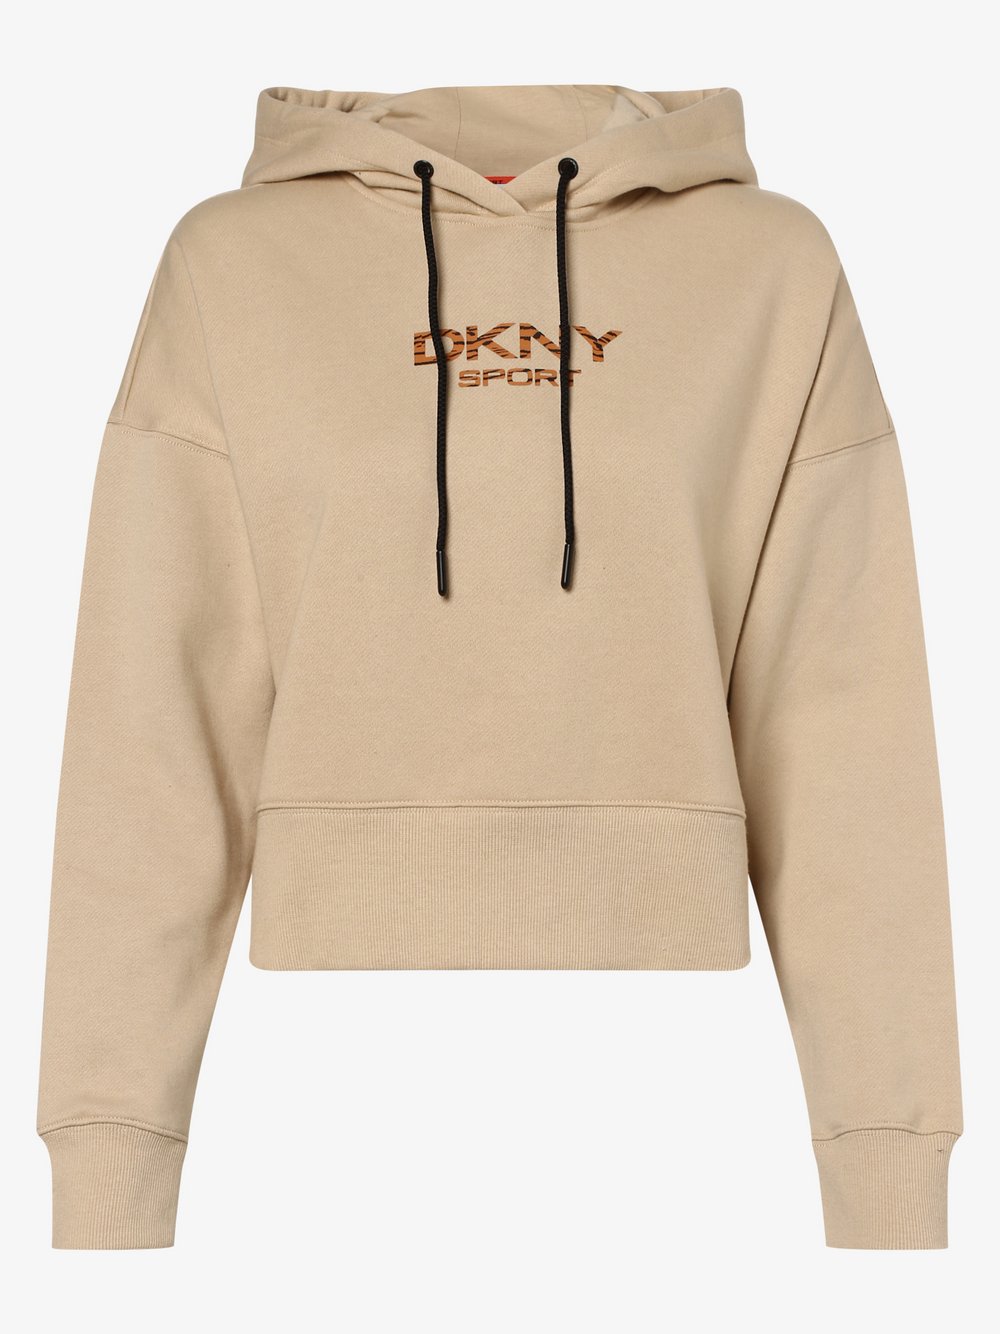 DKNY - Damska bluza z kapturem, beżowy